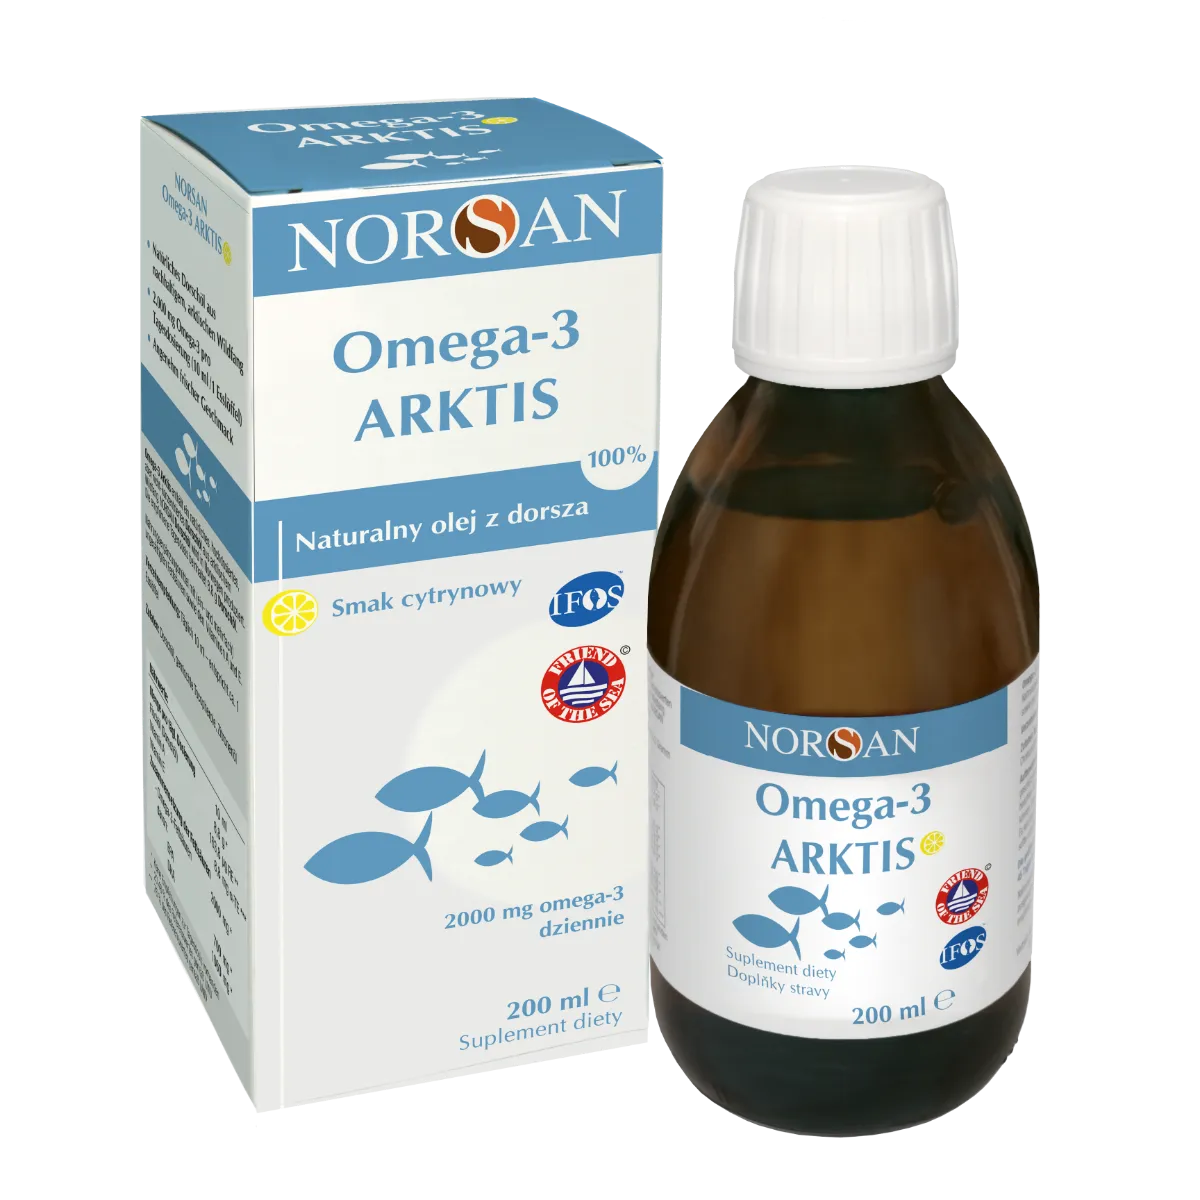 Norsan Omega-3 Artkis naturalny olej z dorsza arktycznego, 200 ml 